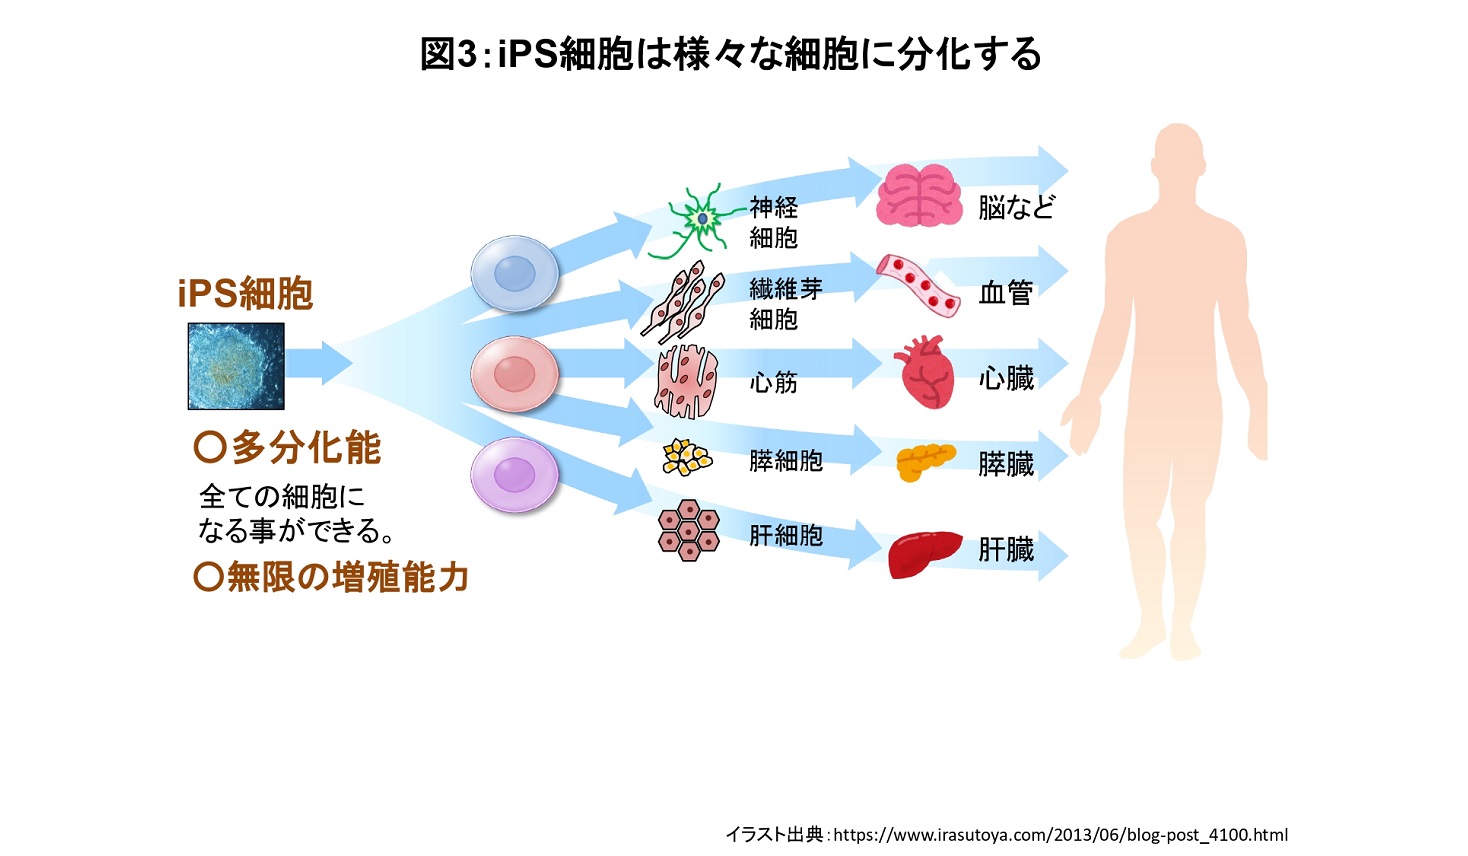 iPS細胞の分化について